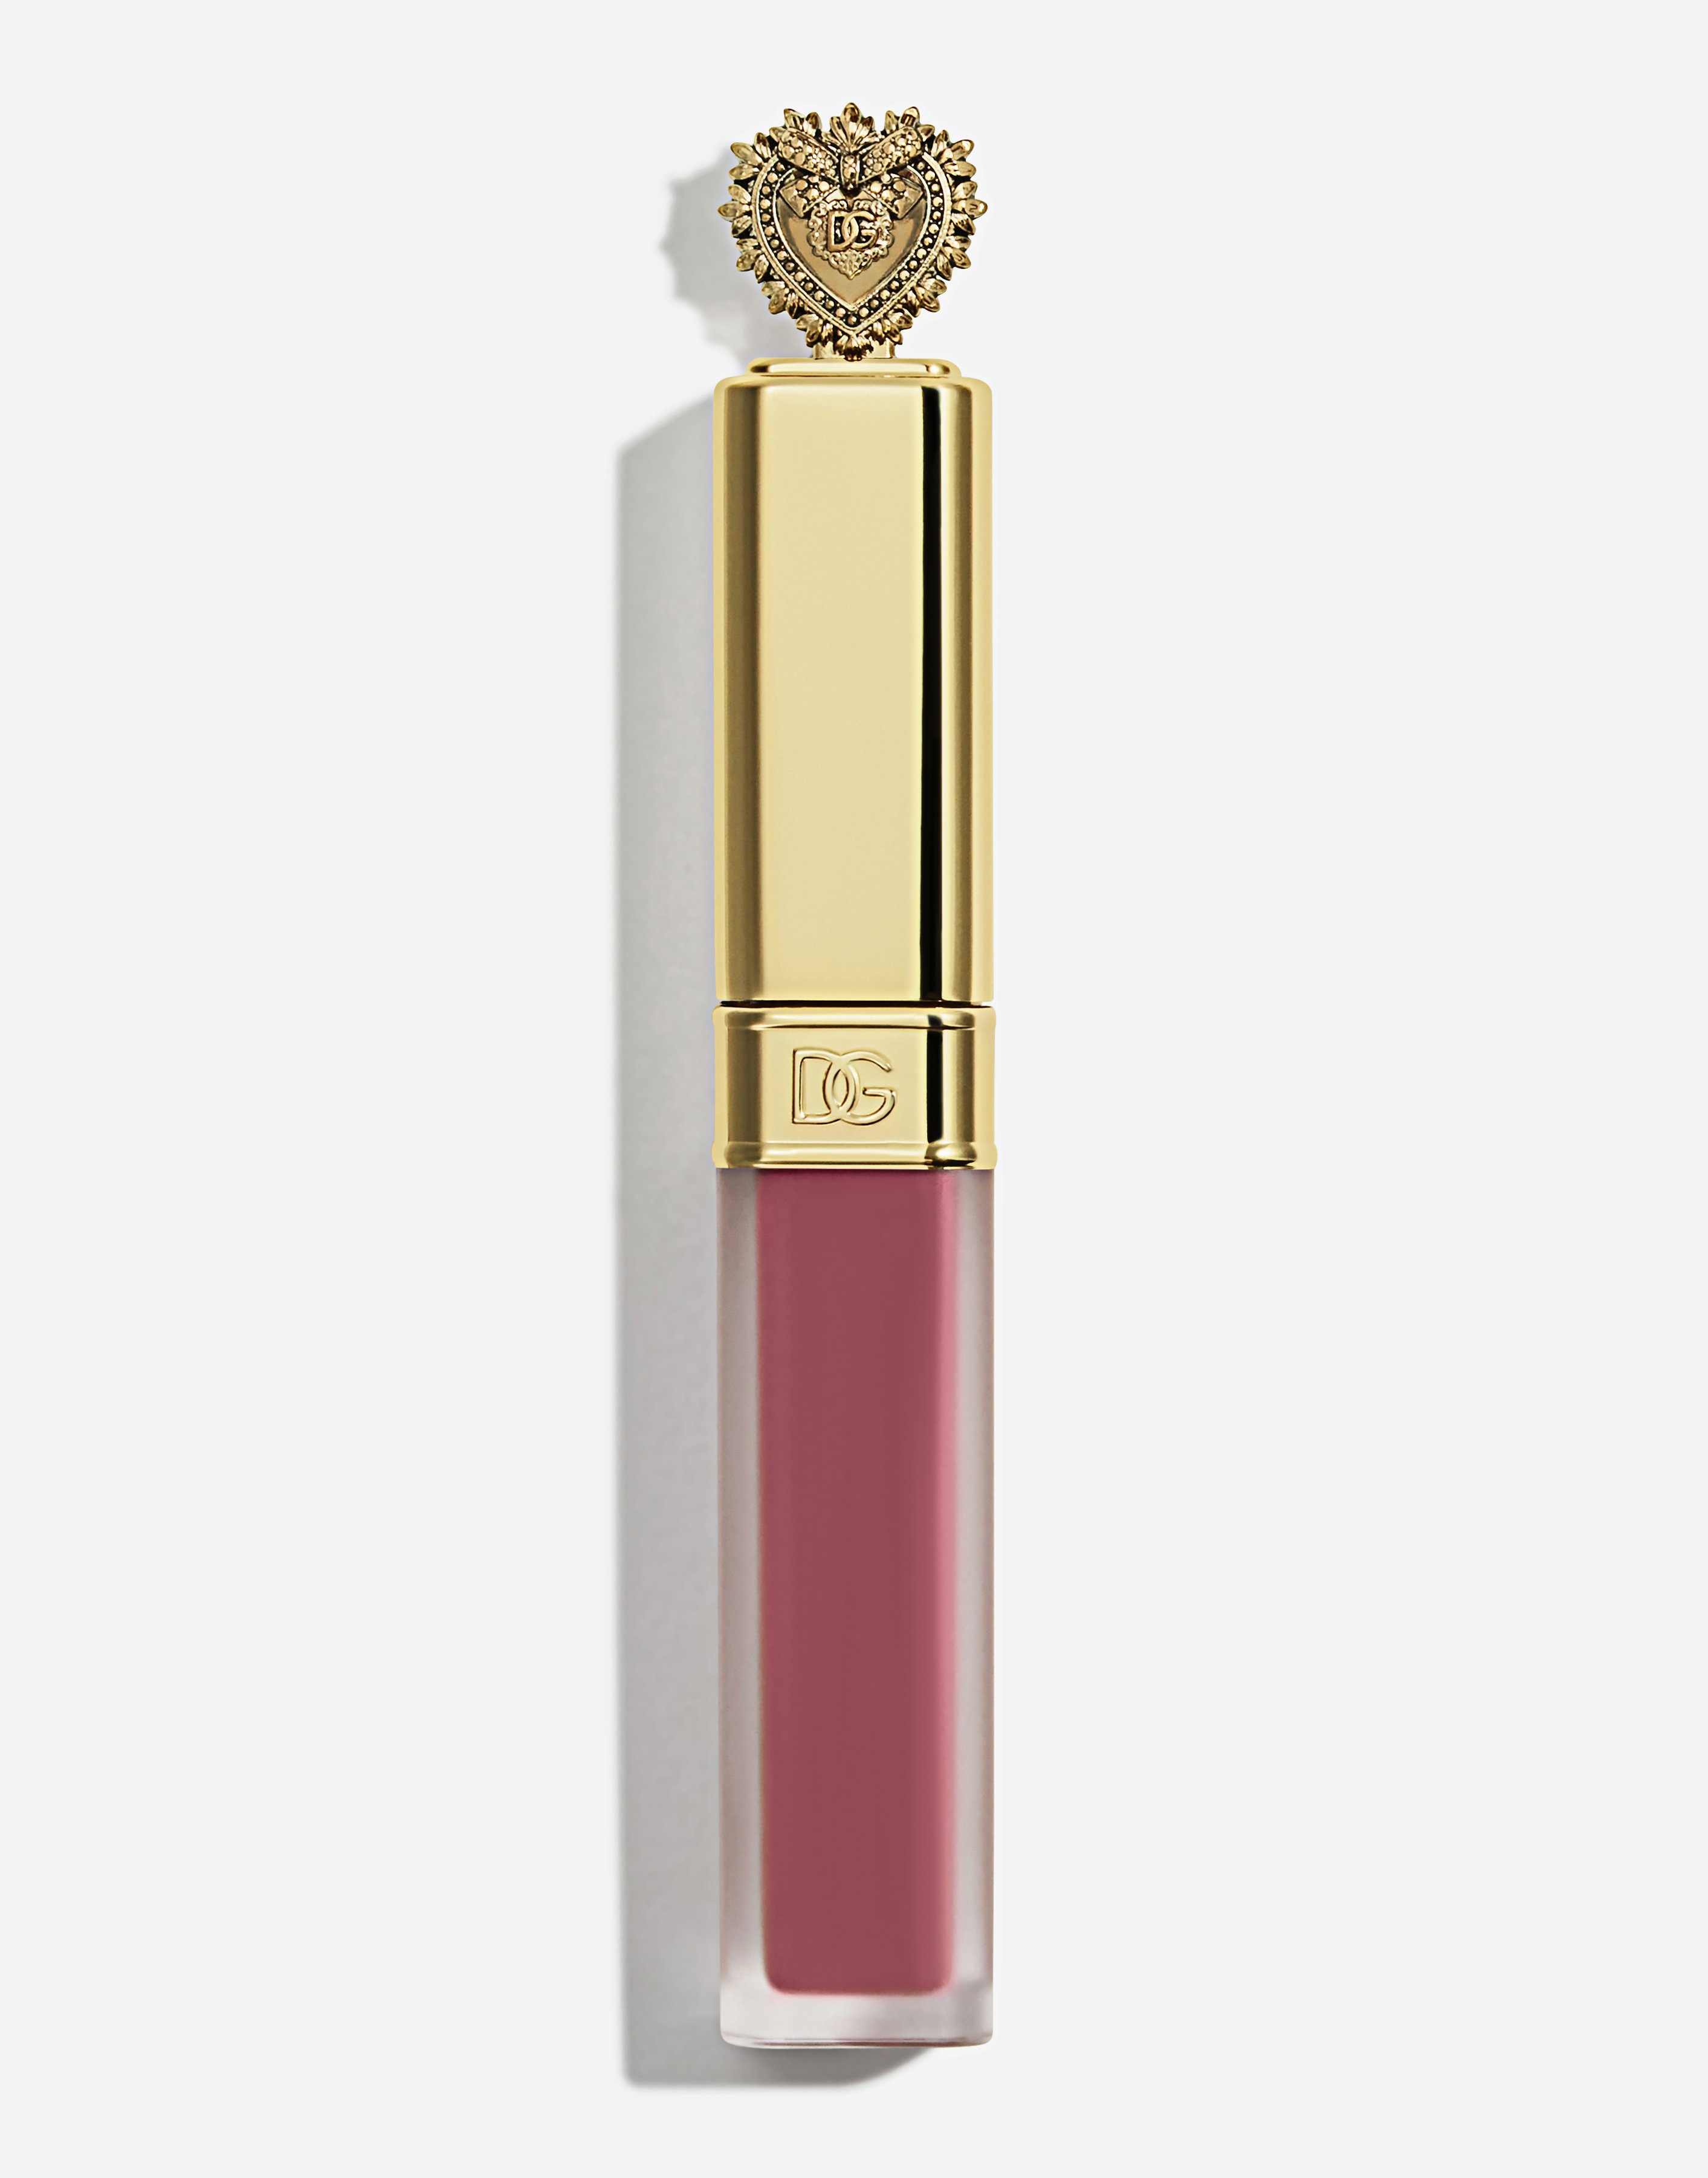 Dolce & Gabbana Devotion Liquid Lipstick In Mousse In 205 Affetto